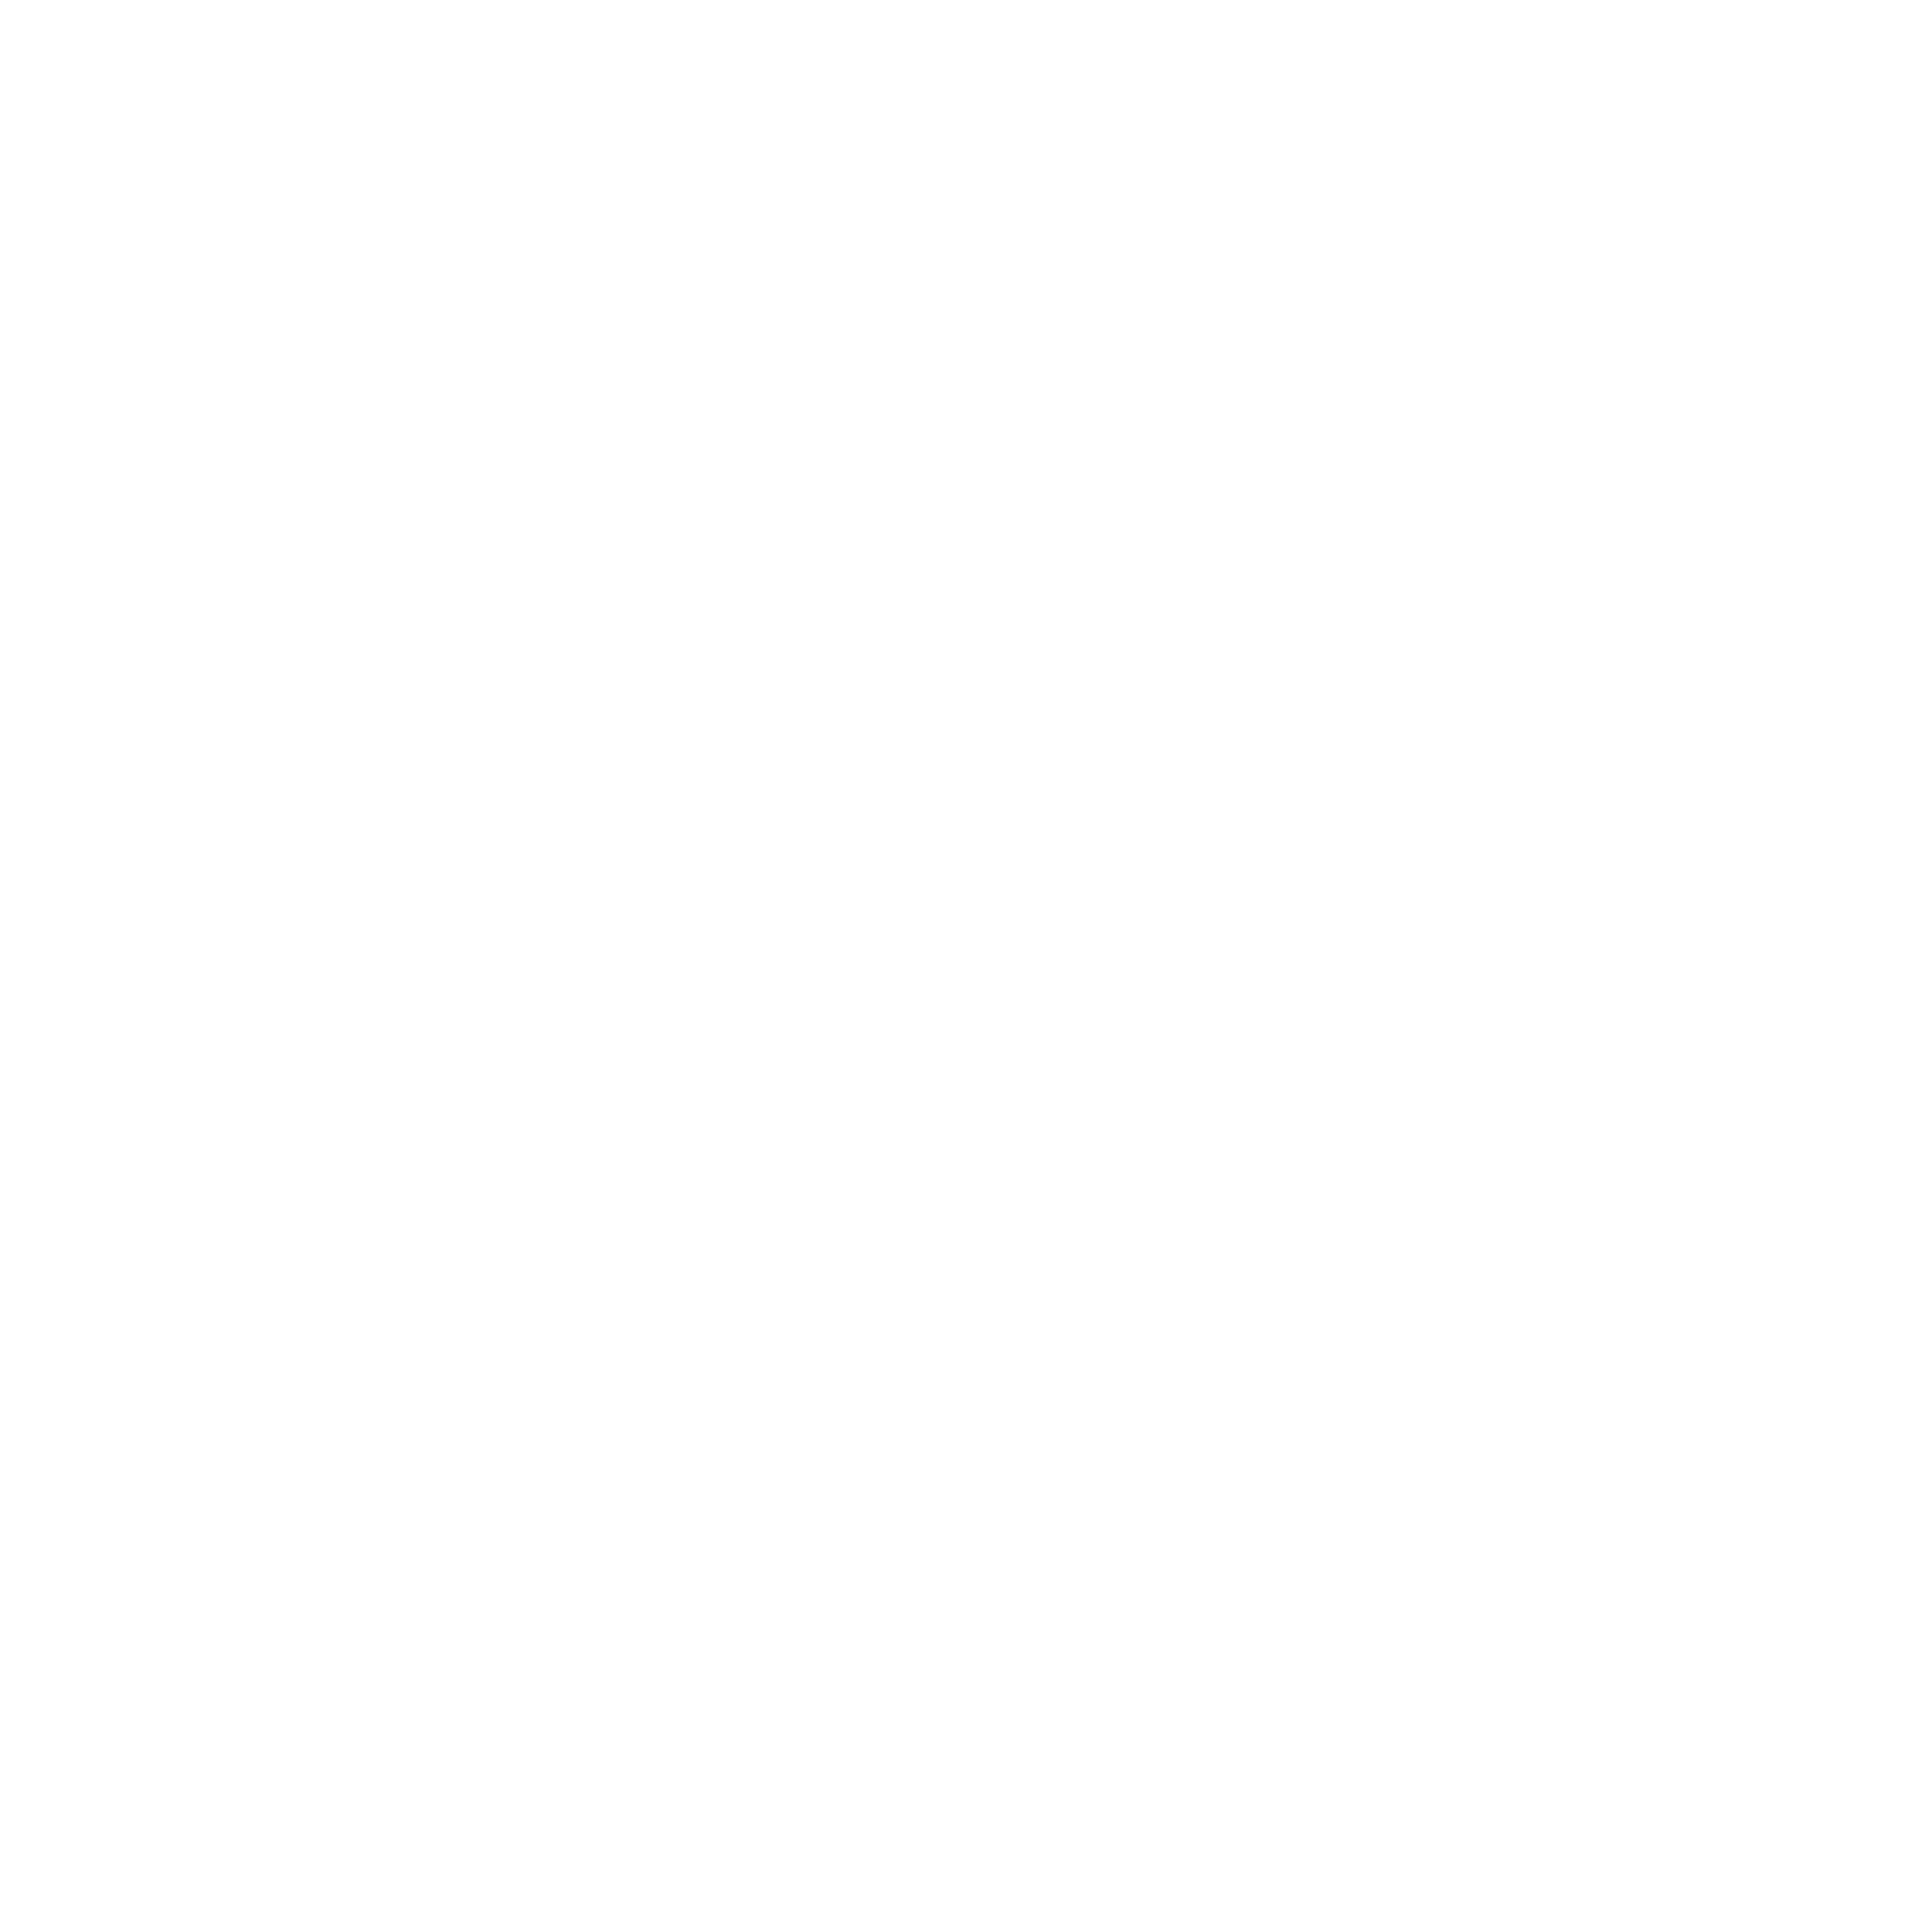 Terumo Logo - Terumo Logo PNG Transparent & SVG Vector - Freebie Supply